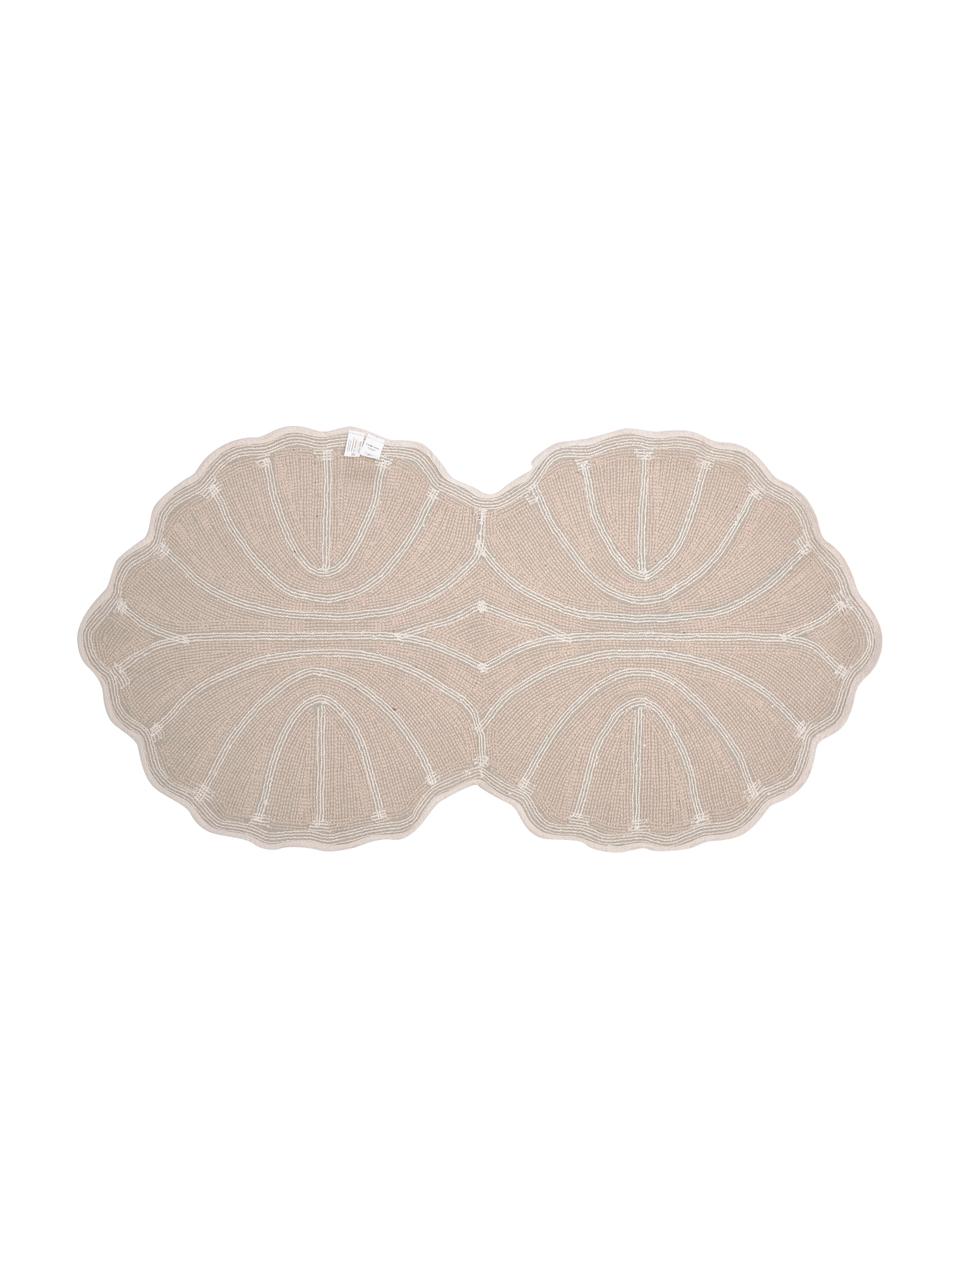 Tappeto bagno in cotone ecru Soft, 100% cotone, Ecru, bianco, Larg. 70 x Lung. 130 cm